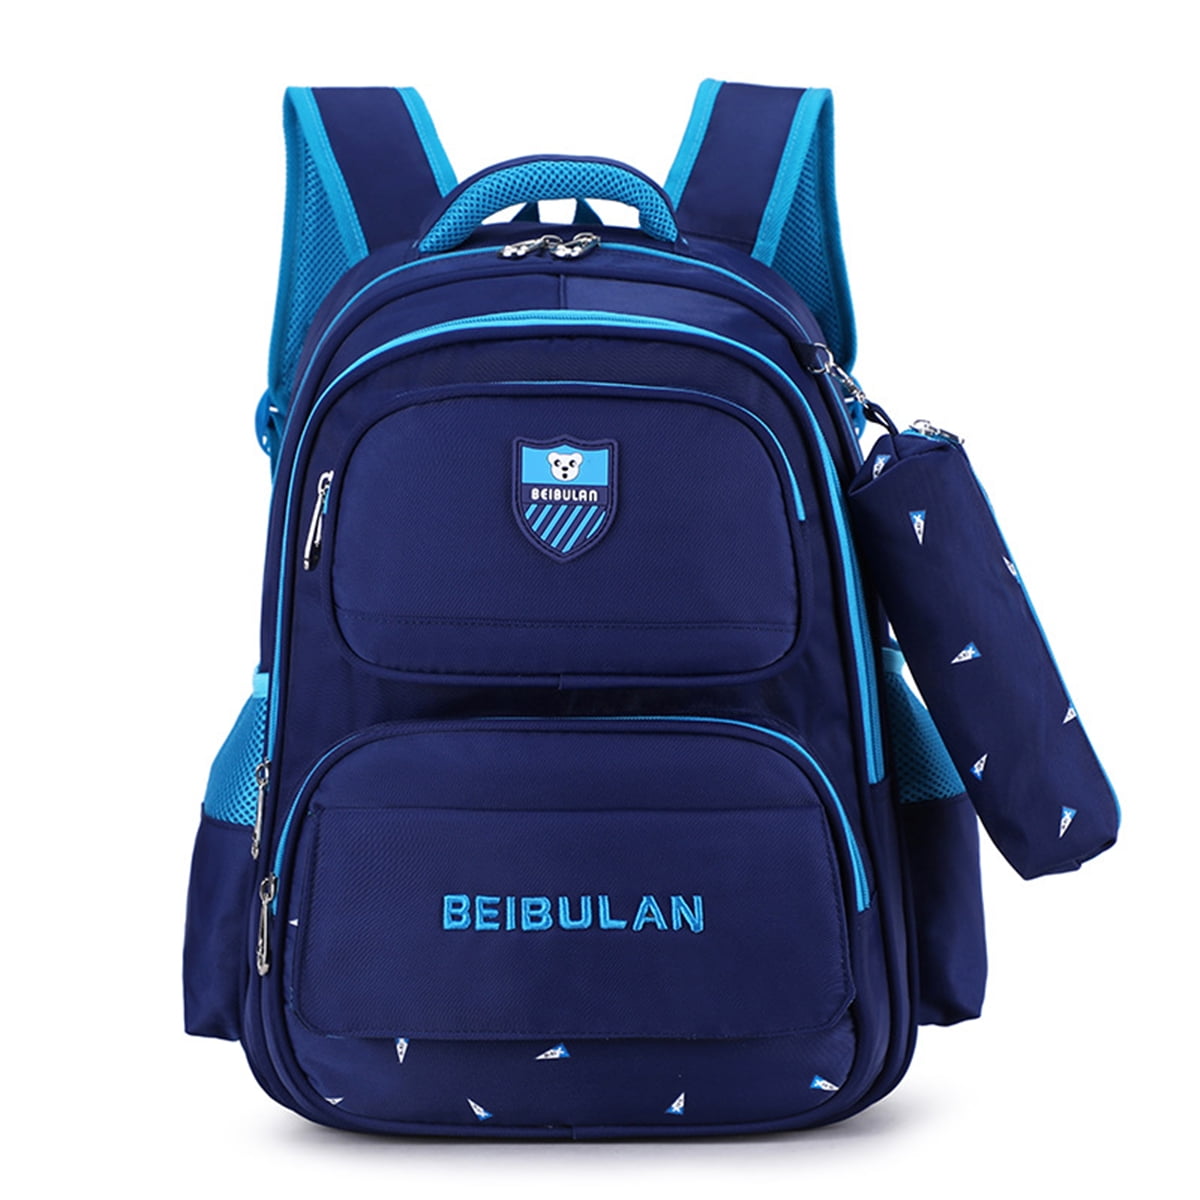 Lemon Orange Green Shoulder Backpack Messenger Crossbody Laptop Bag Student Bookbags for Kid Girls Boys